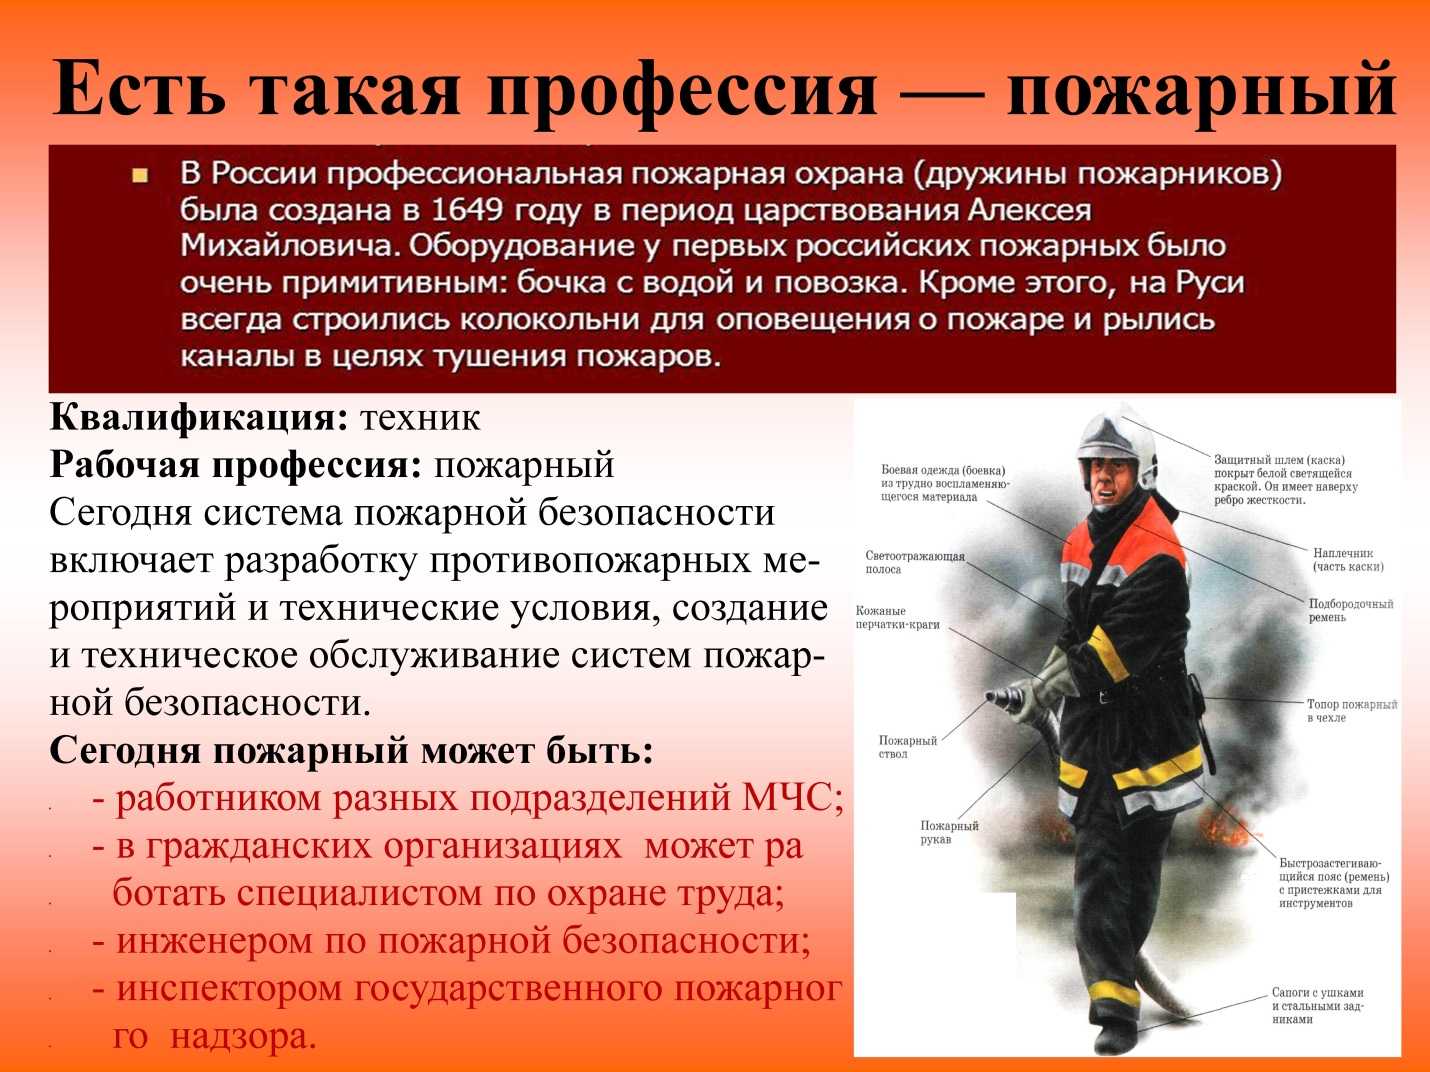 Какие обязанности россии ты знаешь. Профессия пожарный. Сведения о профессии пожарного. Описать профессию пожарного. Интересные факты о пожарных.